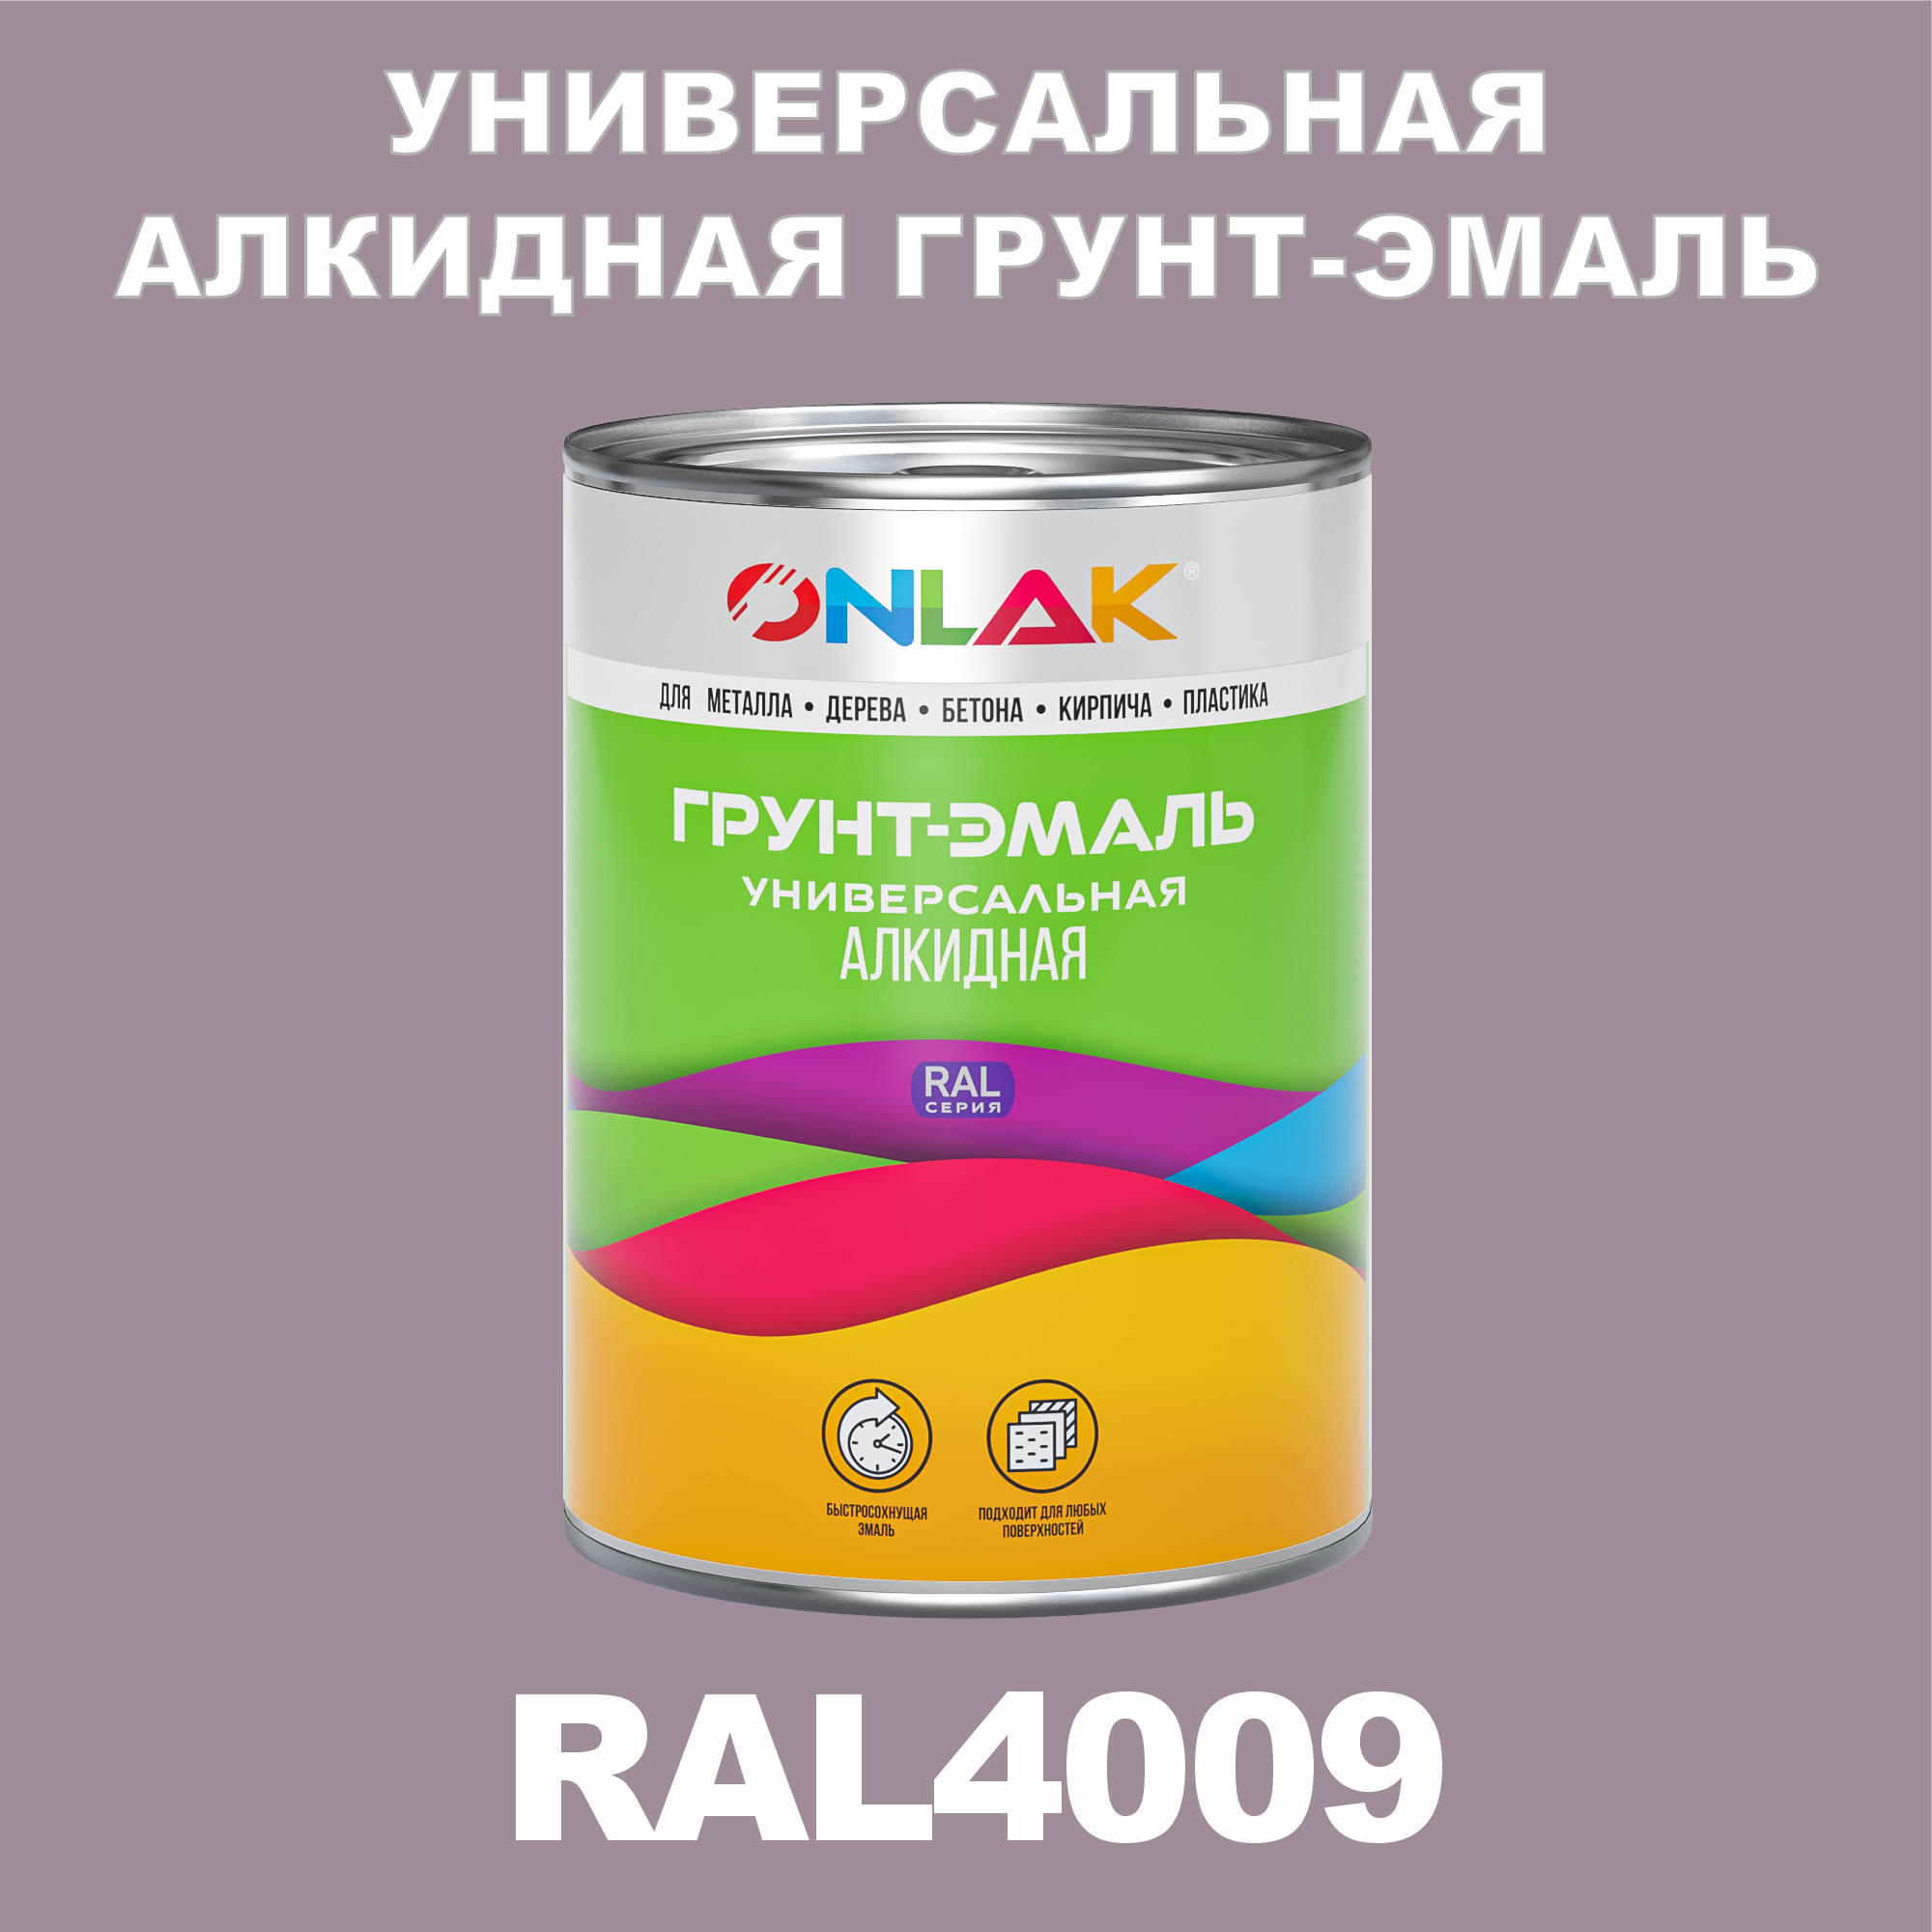 Грунт-эмаль ONLAK 1К RAL4009 антикоррозионная алкидная по металлу по ржавчине 1 кг грунт эмаль yollo по ржавчине алкидная серая 0 9 кг